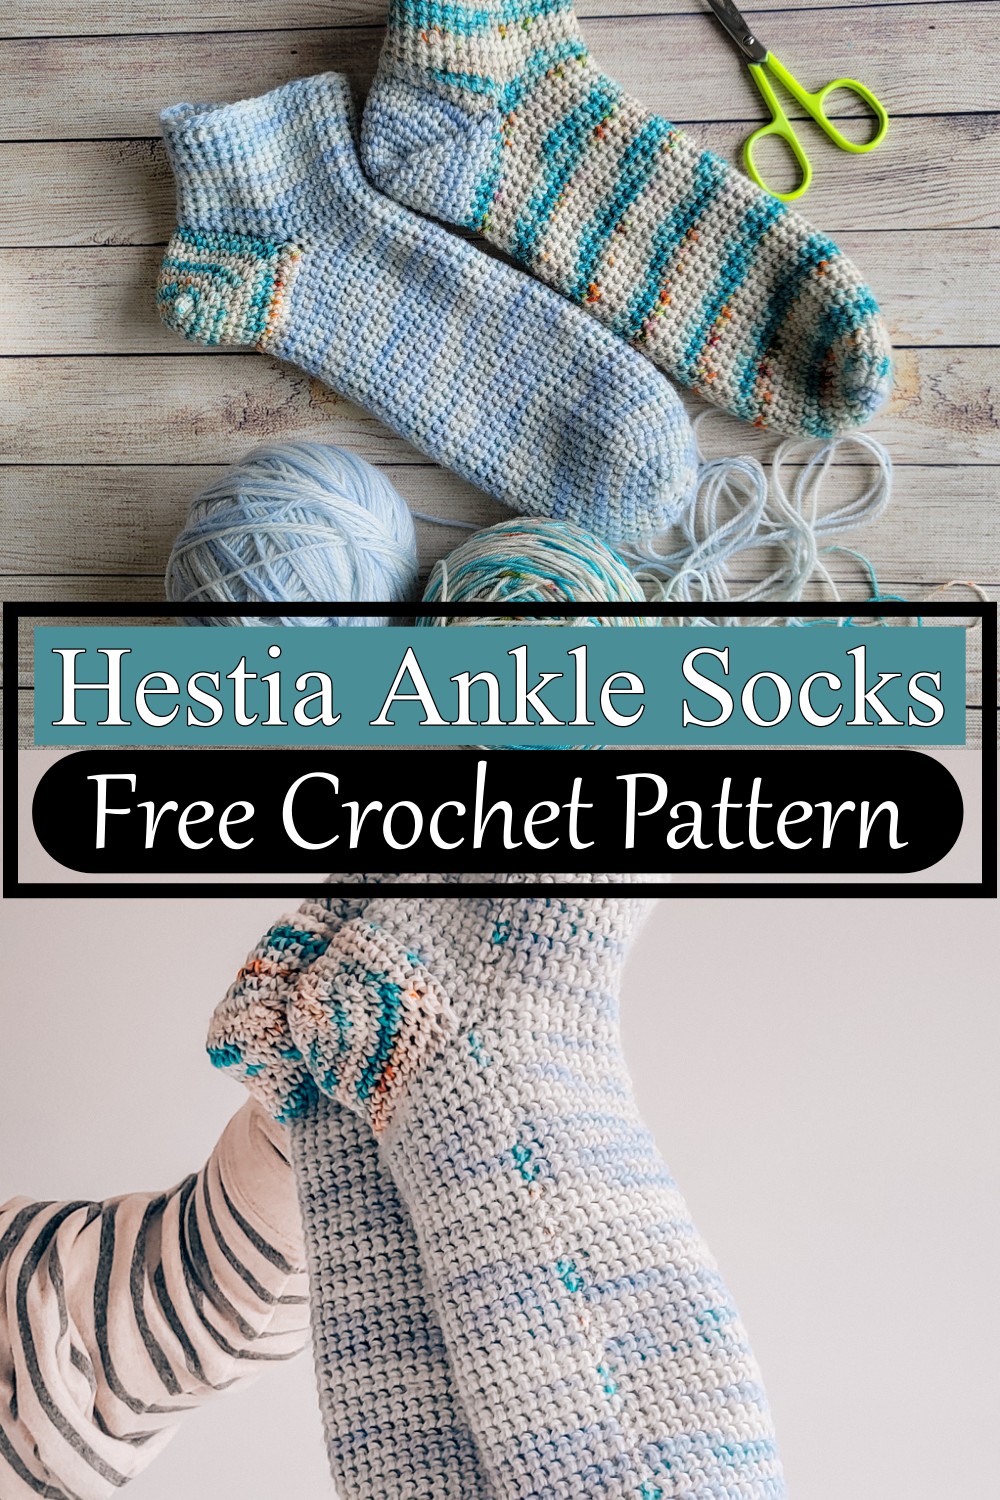 Hestia Ankle Socks